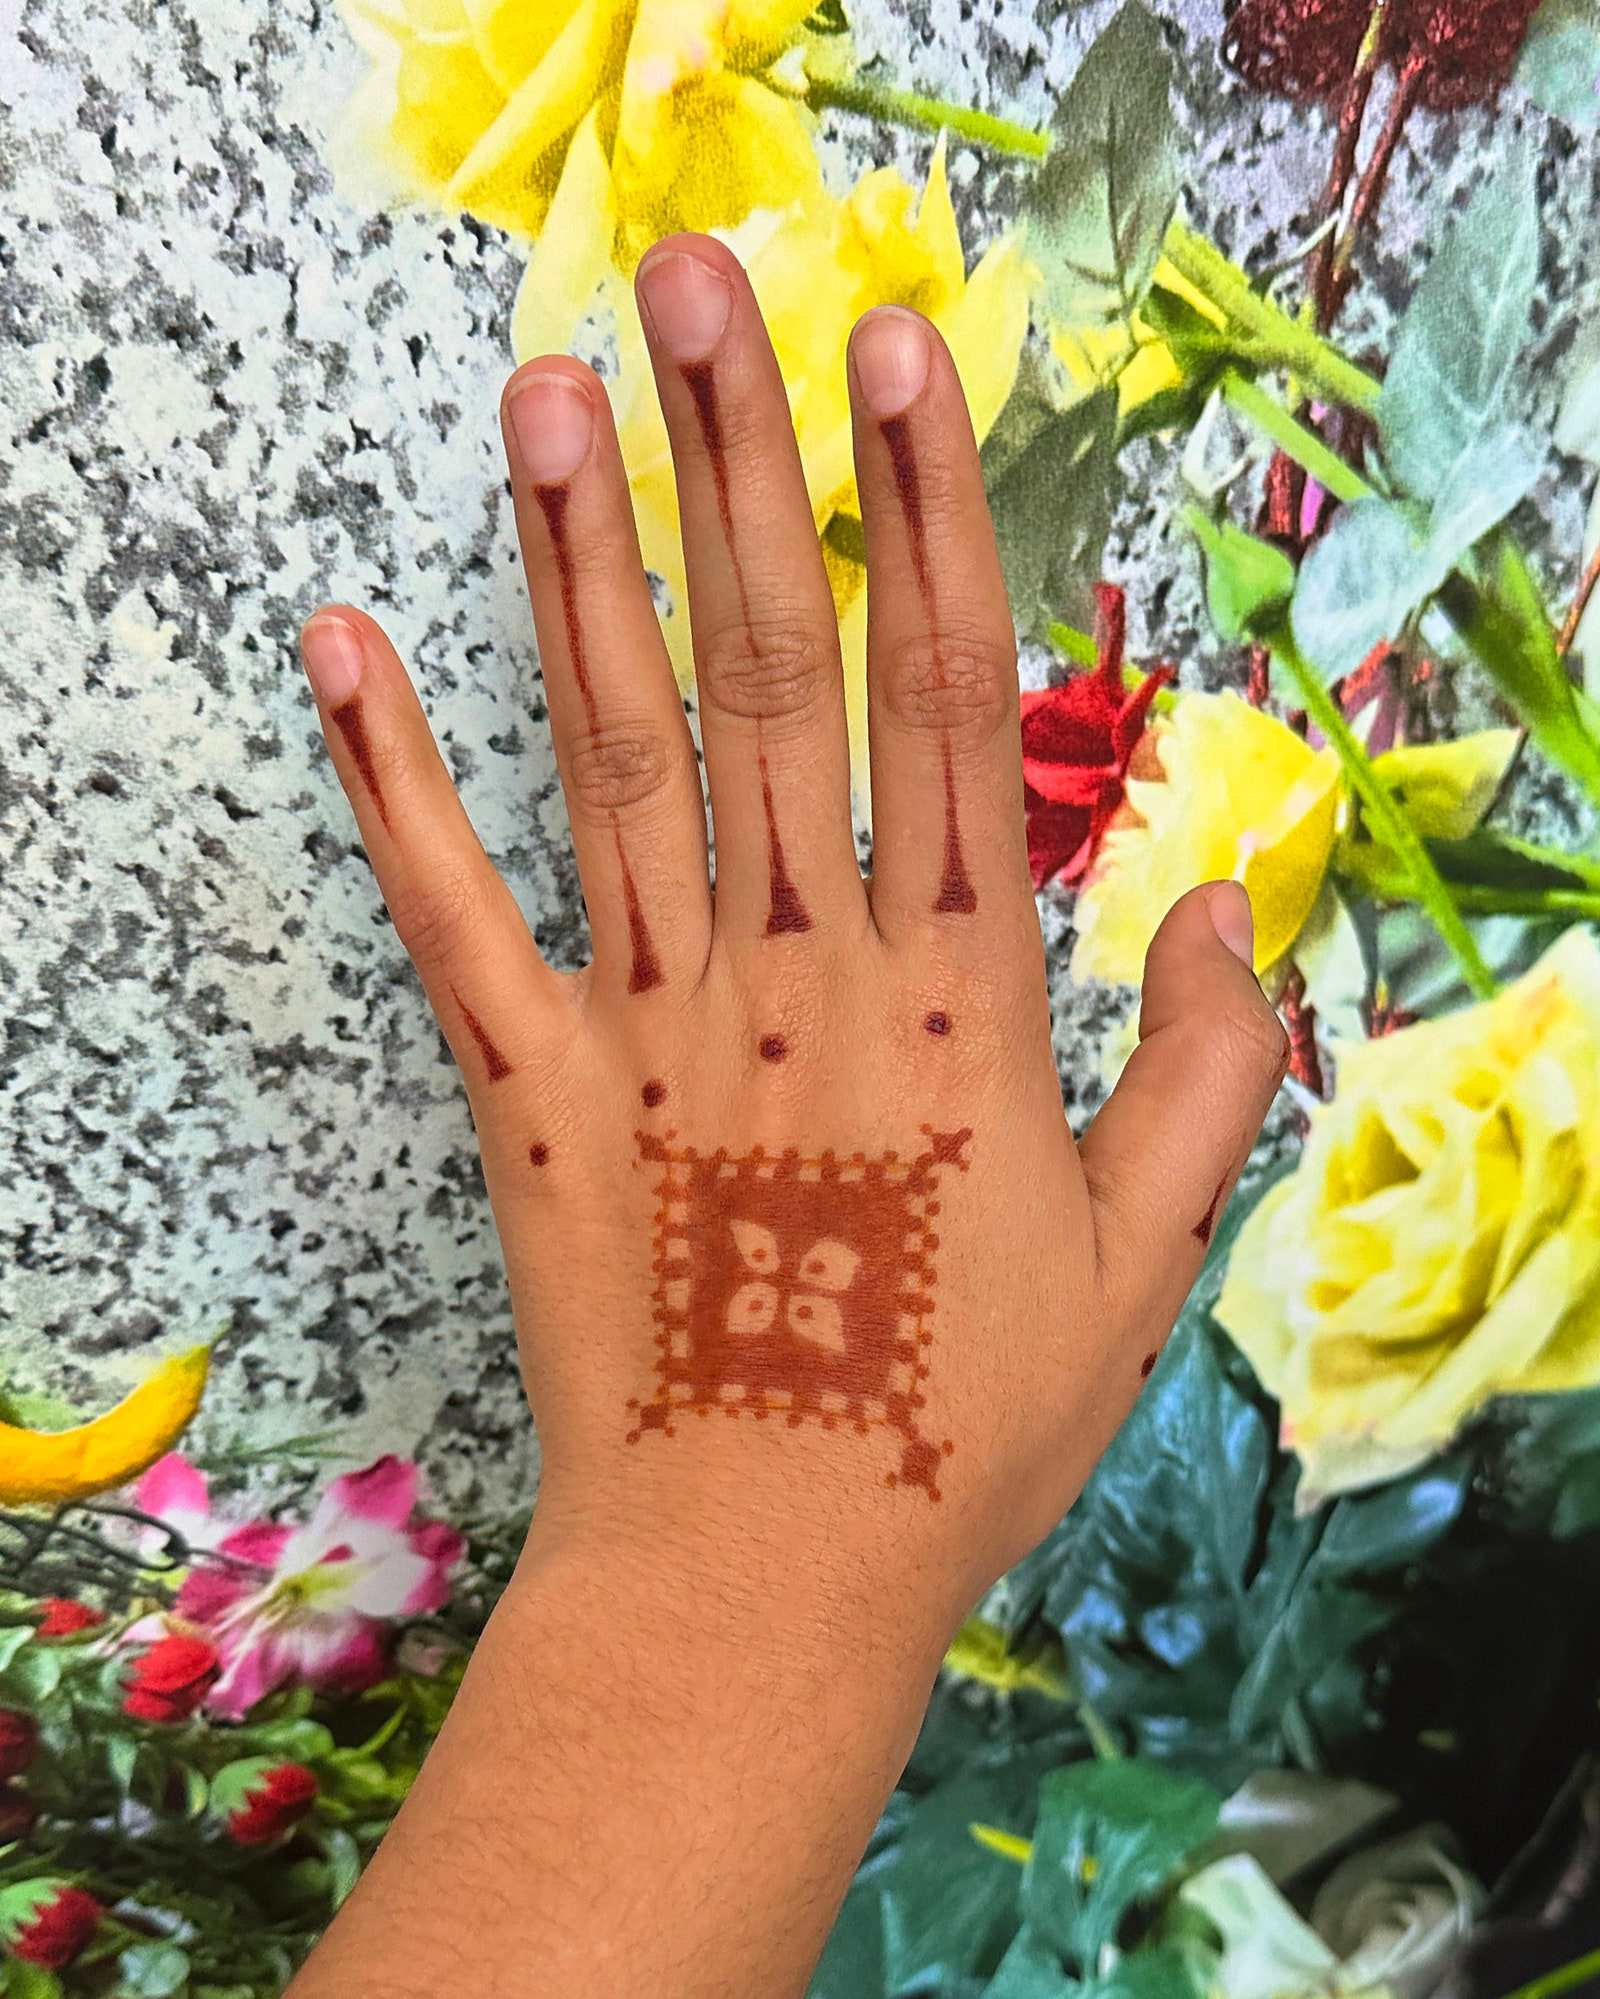 Azra Khamissa, a henna artist